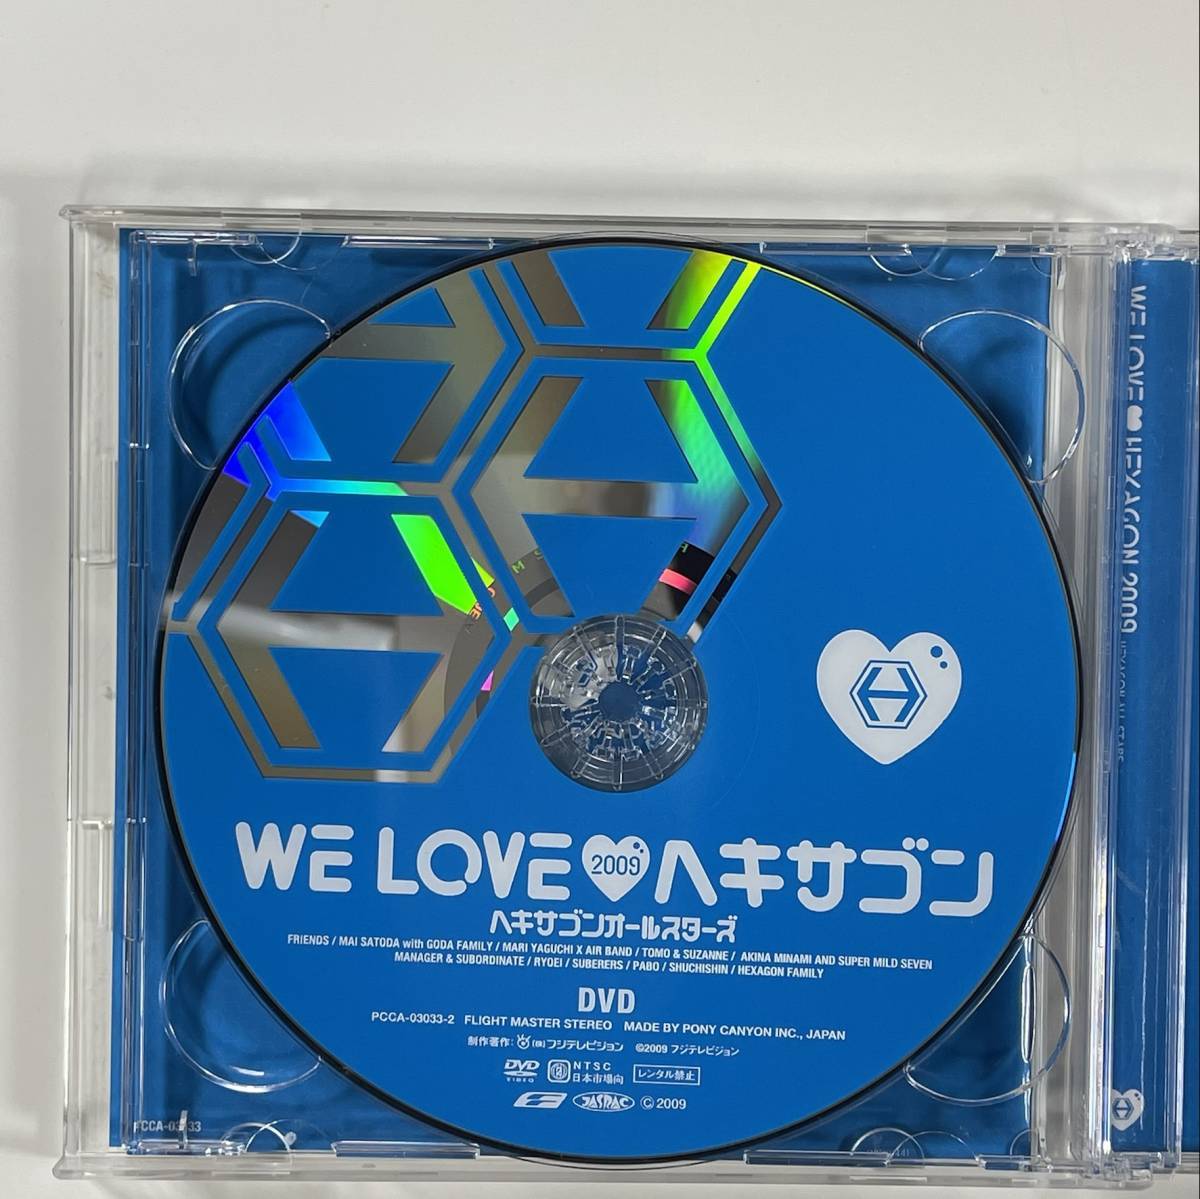 C 0027 最新作 ヘキサゴンオールスターズ We Loveヘキサゴン Dvd付属 09リミテッド リミテッドエディション盤